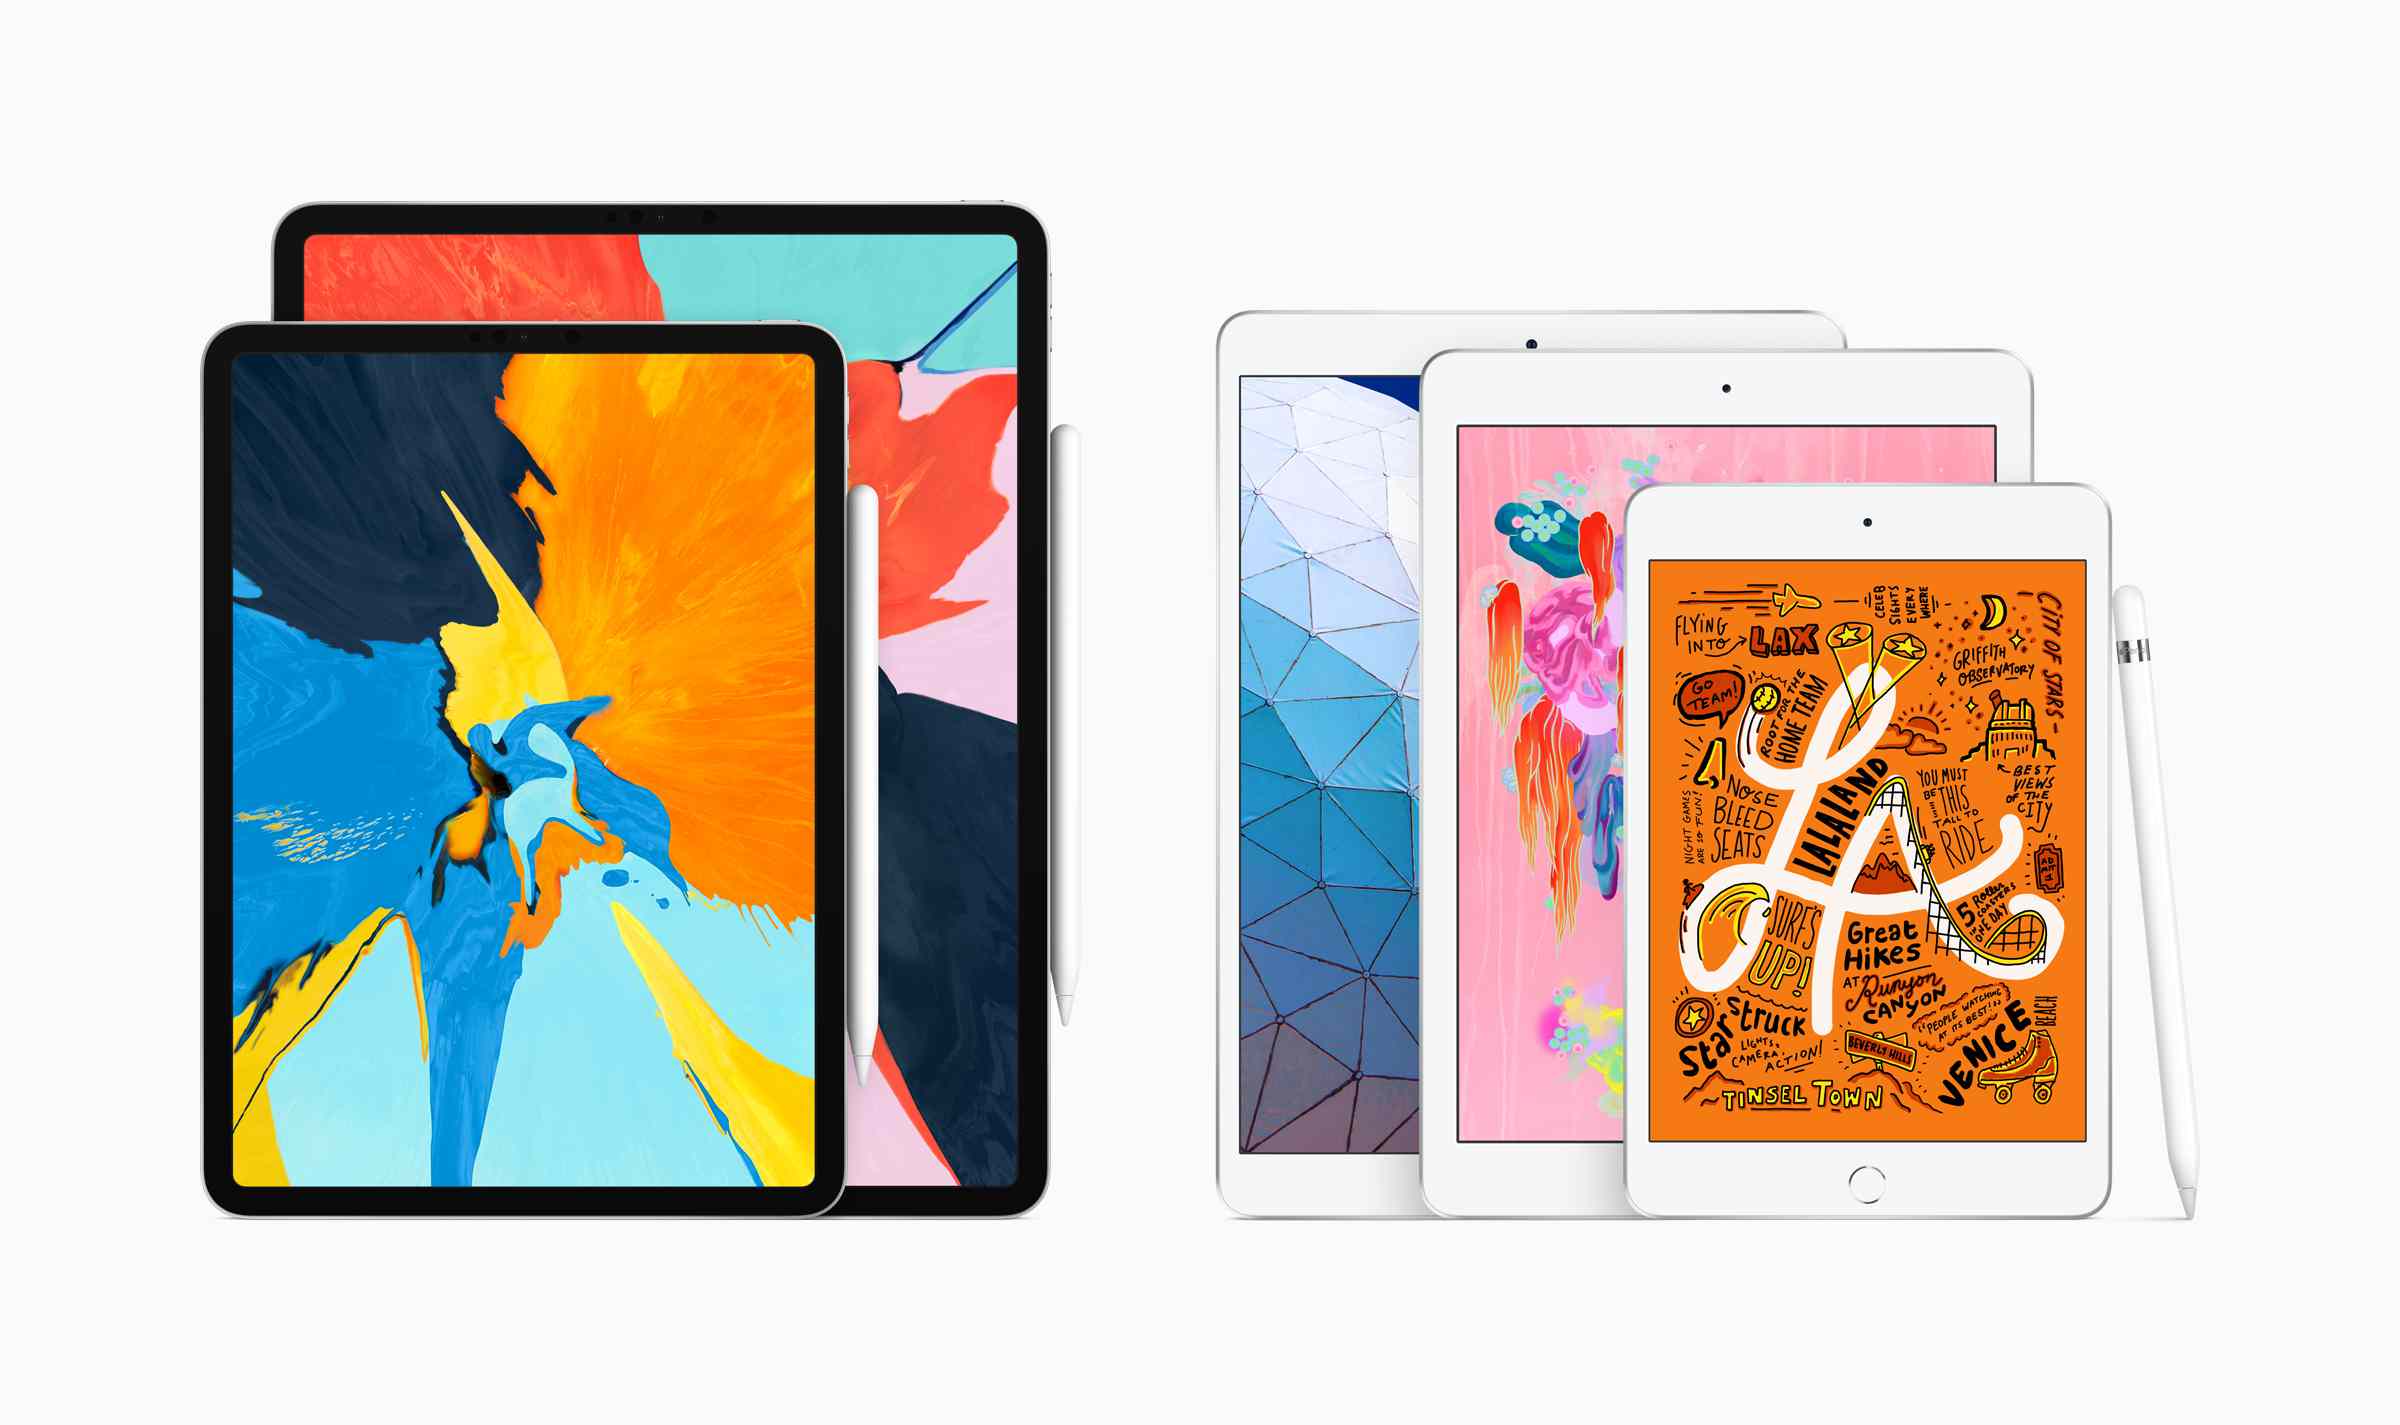 New-iPad-air-and-iPad-mini-with-Apple-Pencil-03182019-60f2de1f64db4b8dbe4822e18a8e6672